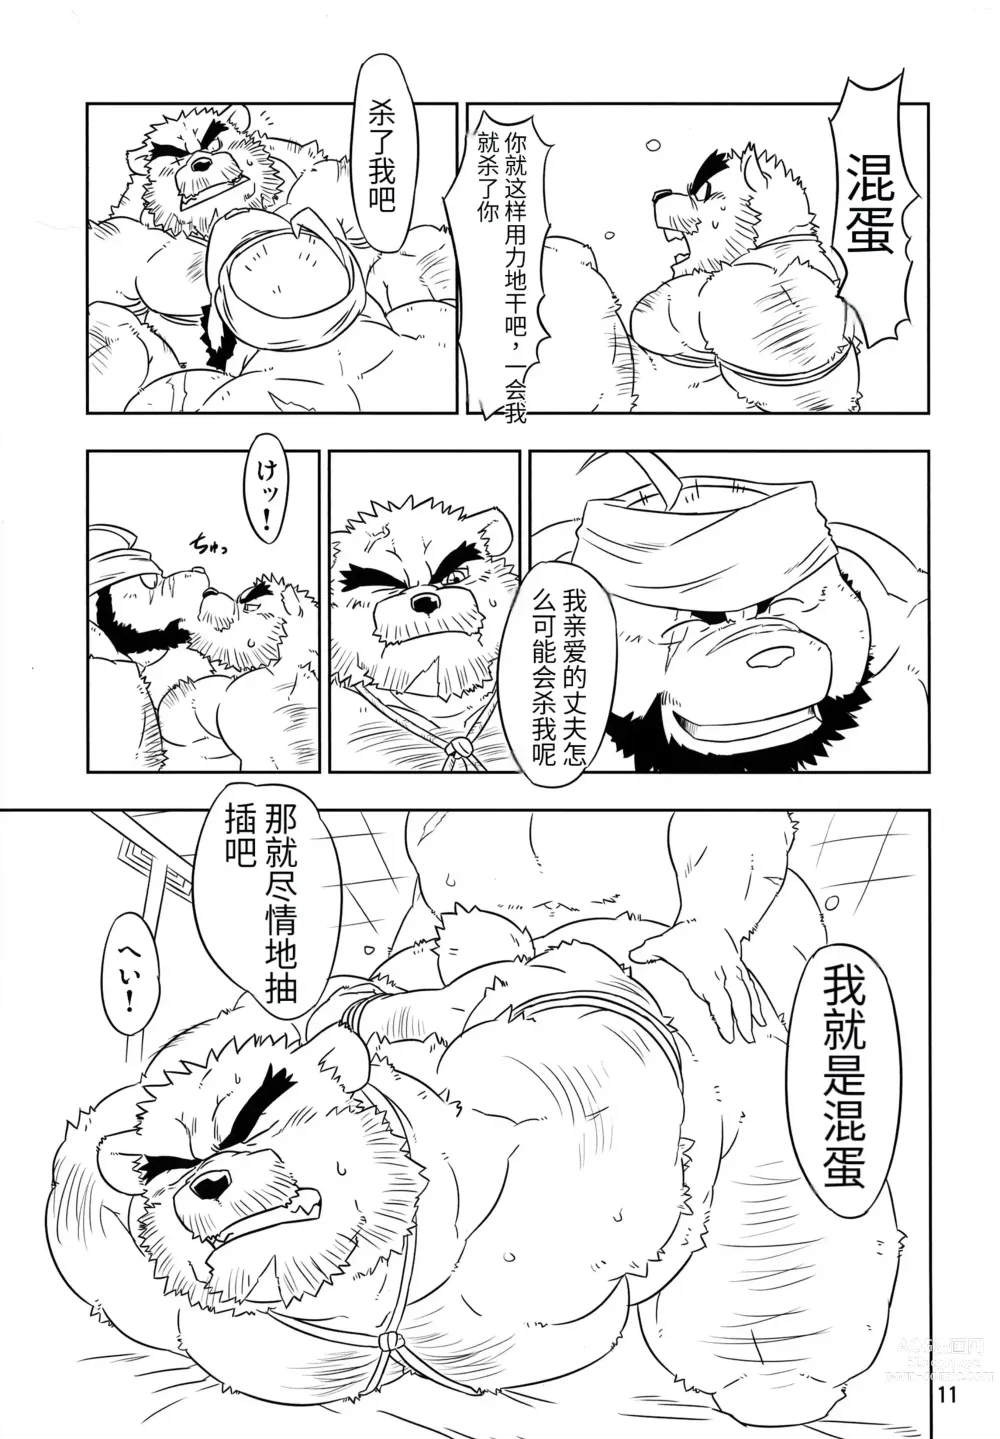 Page 11 of doujinshi Kemono no Roukaku - Utage